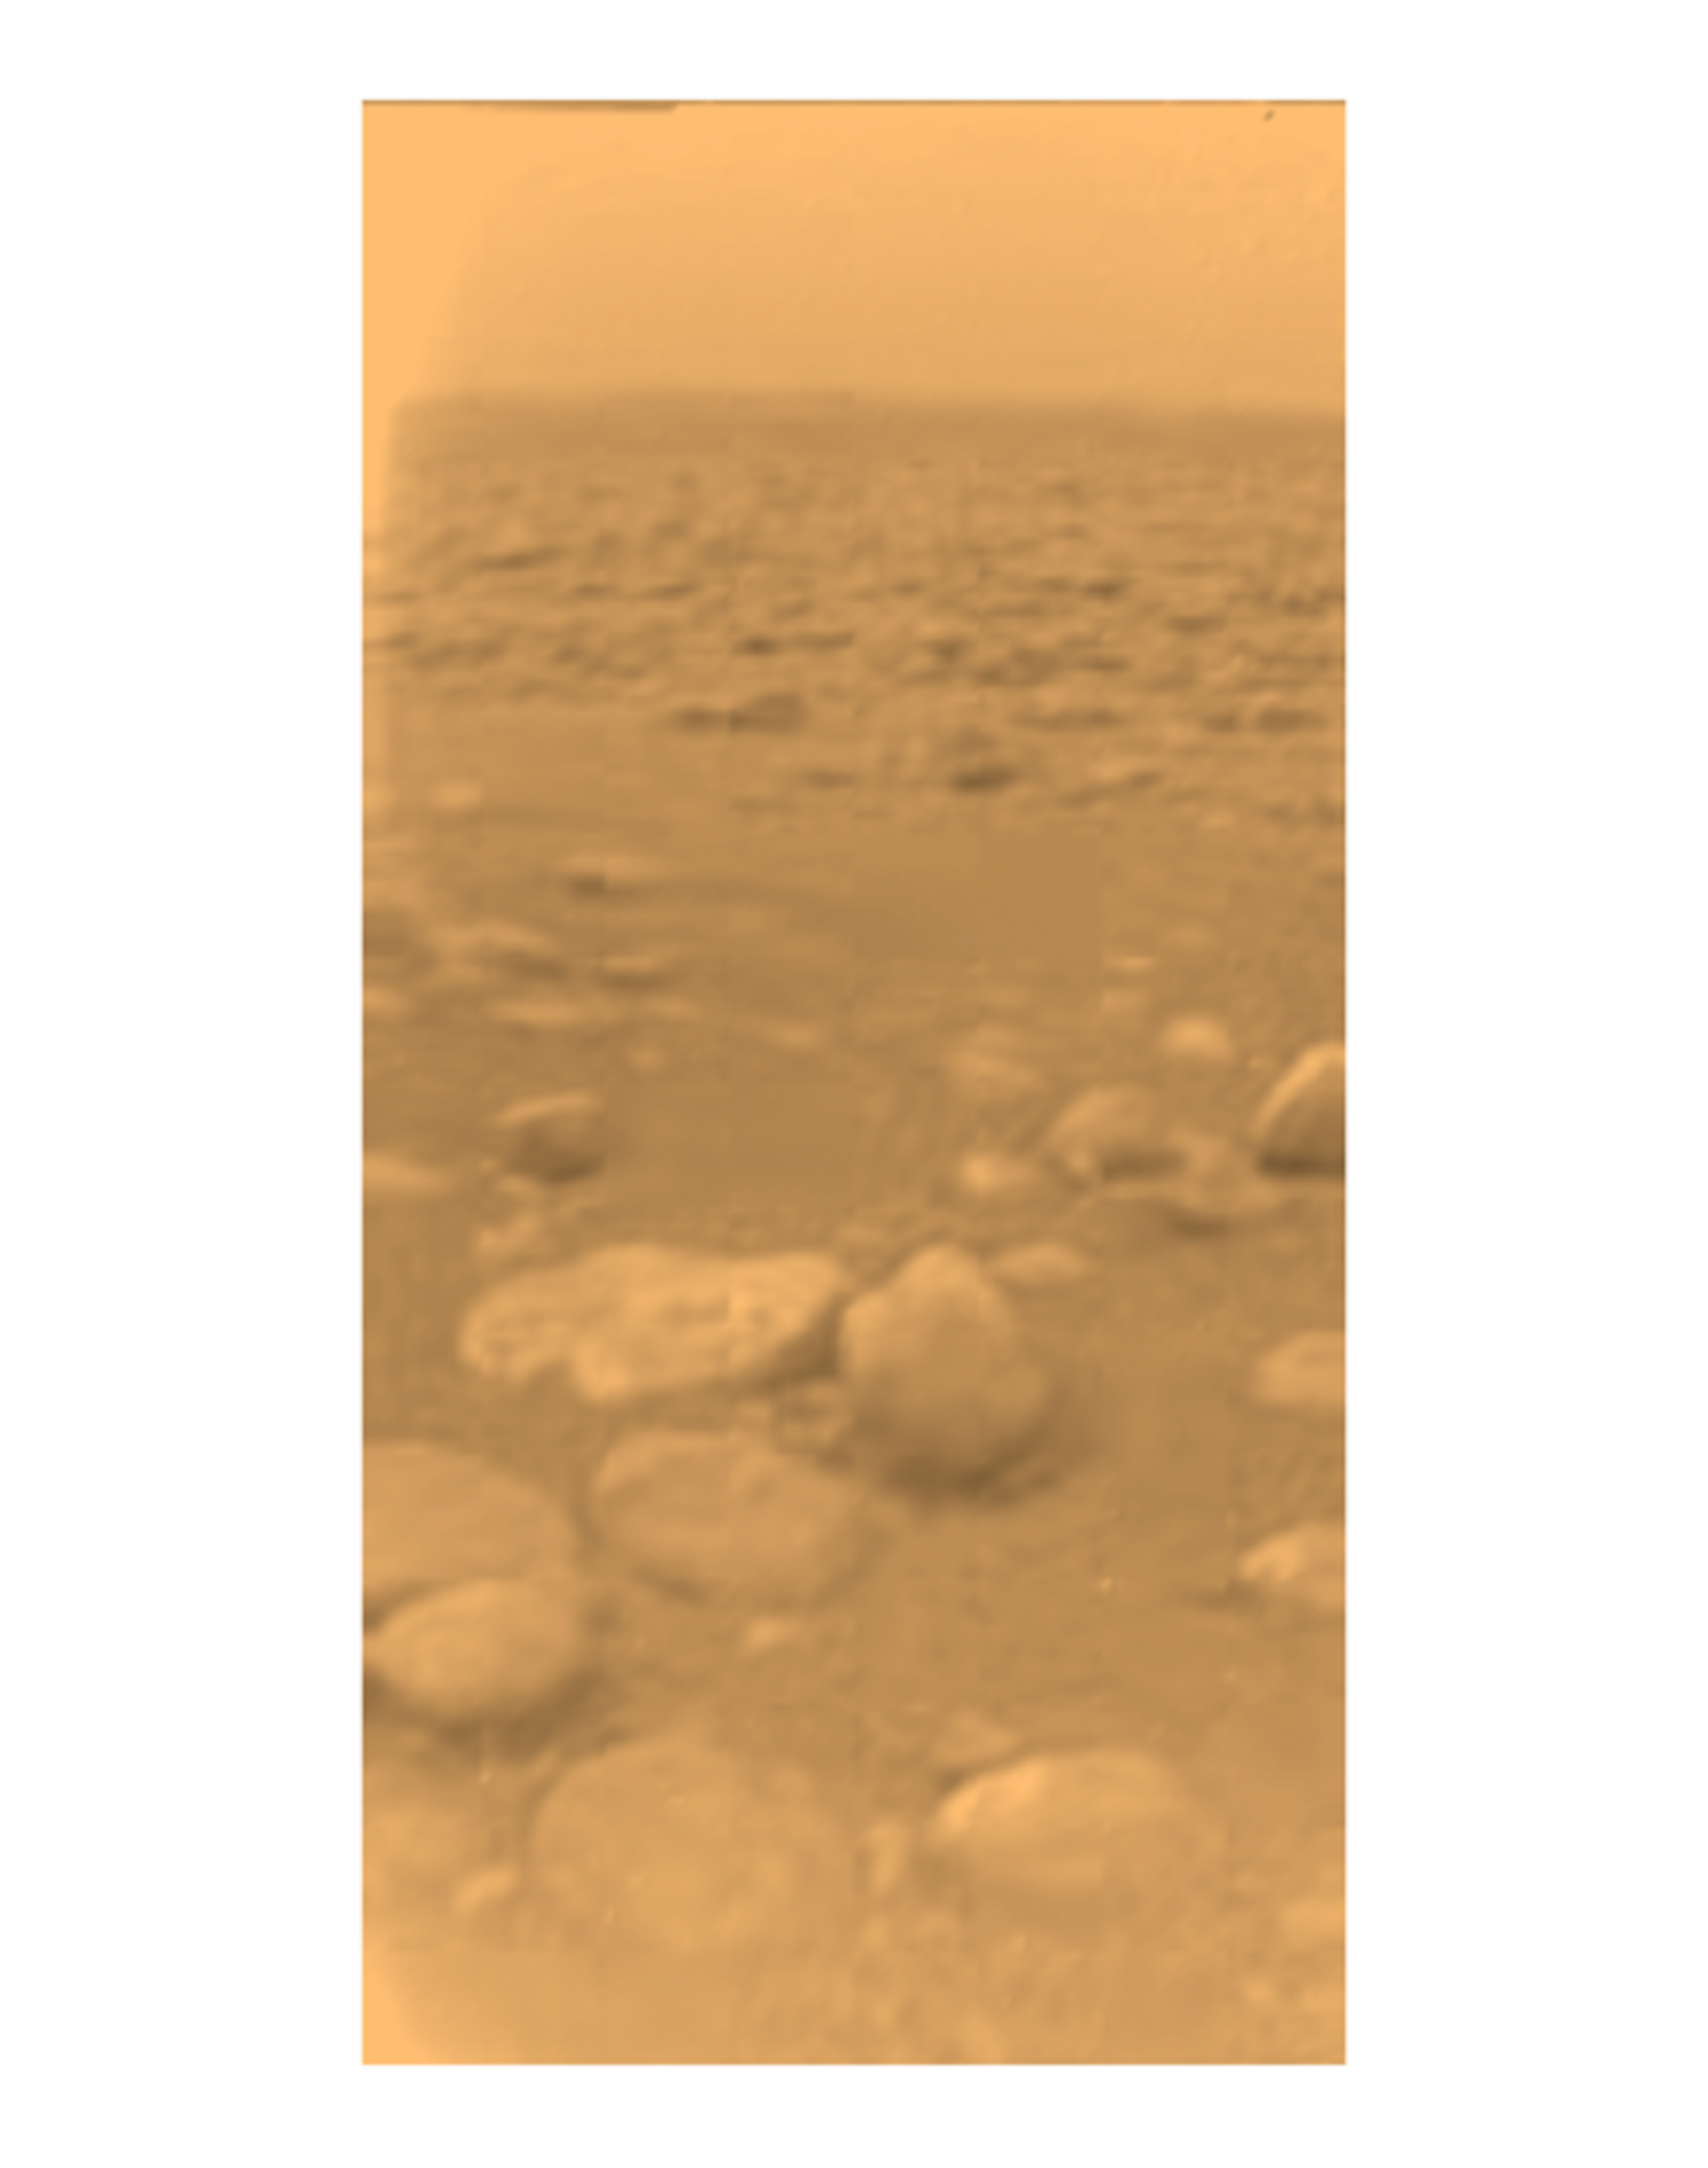 Erste Farbansicht der Oberfläche Titans